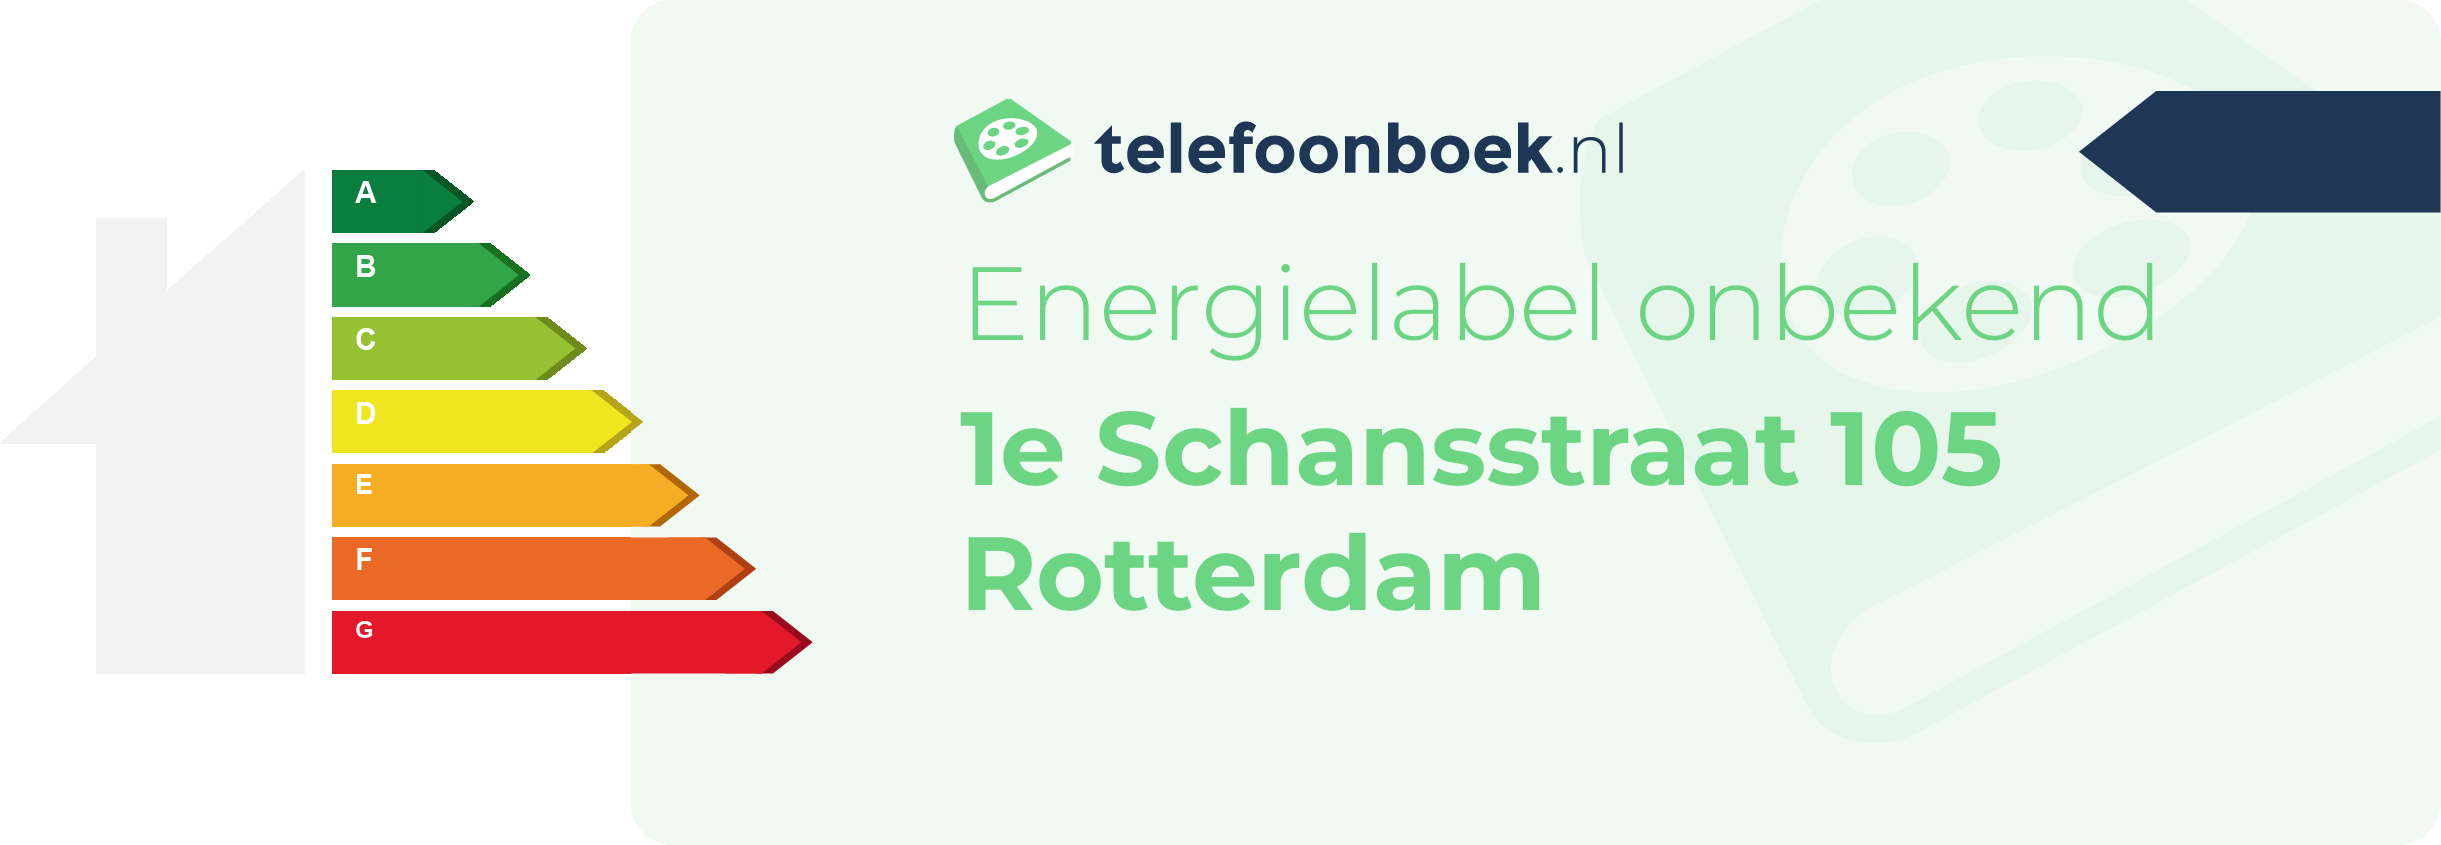 Energielabel 1e Schansstraat 105 Rotterdam